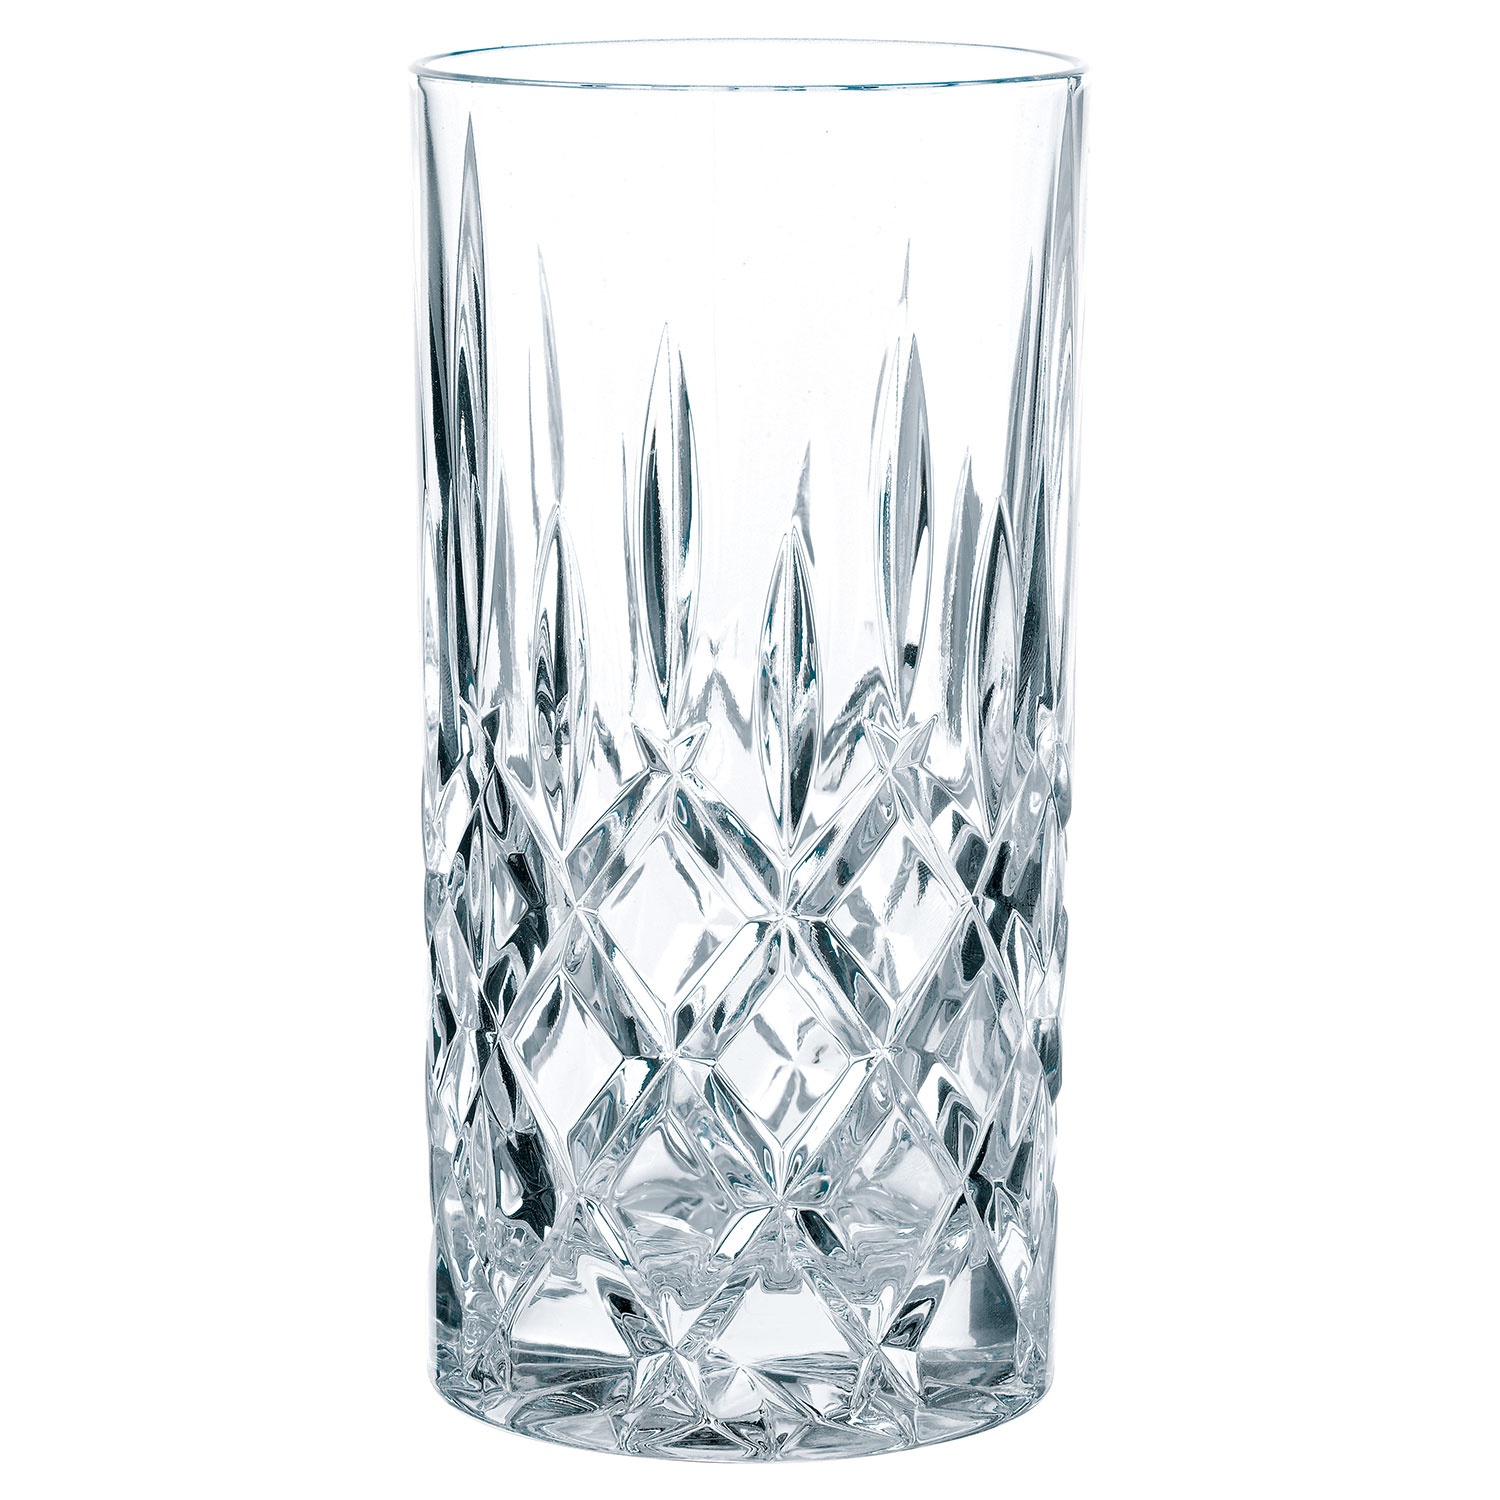 SPIEGELAU Gin-Gläser, 4-er Packung